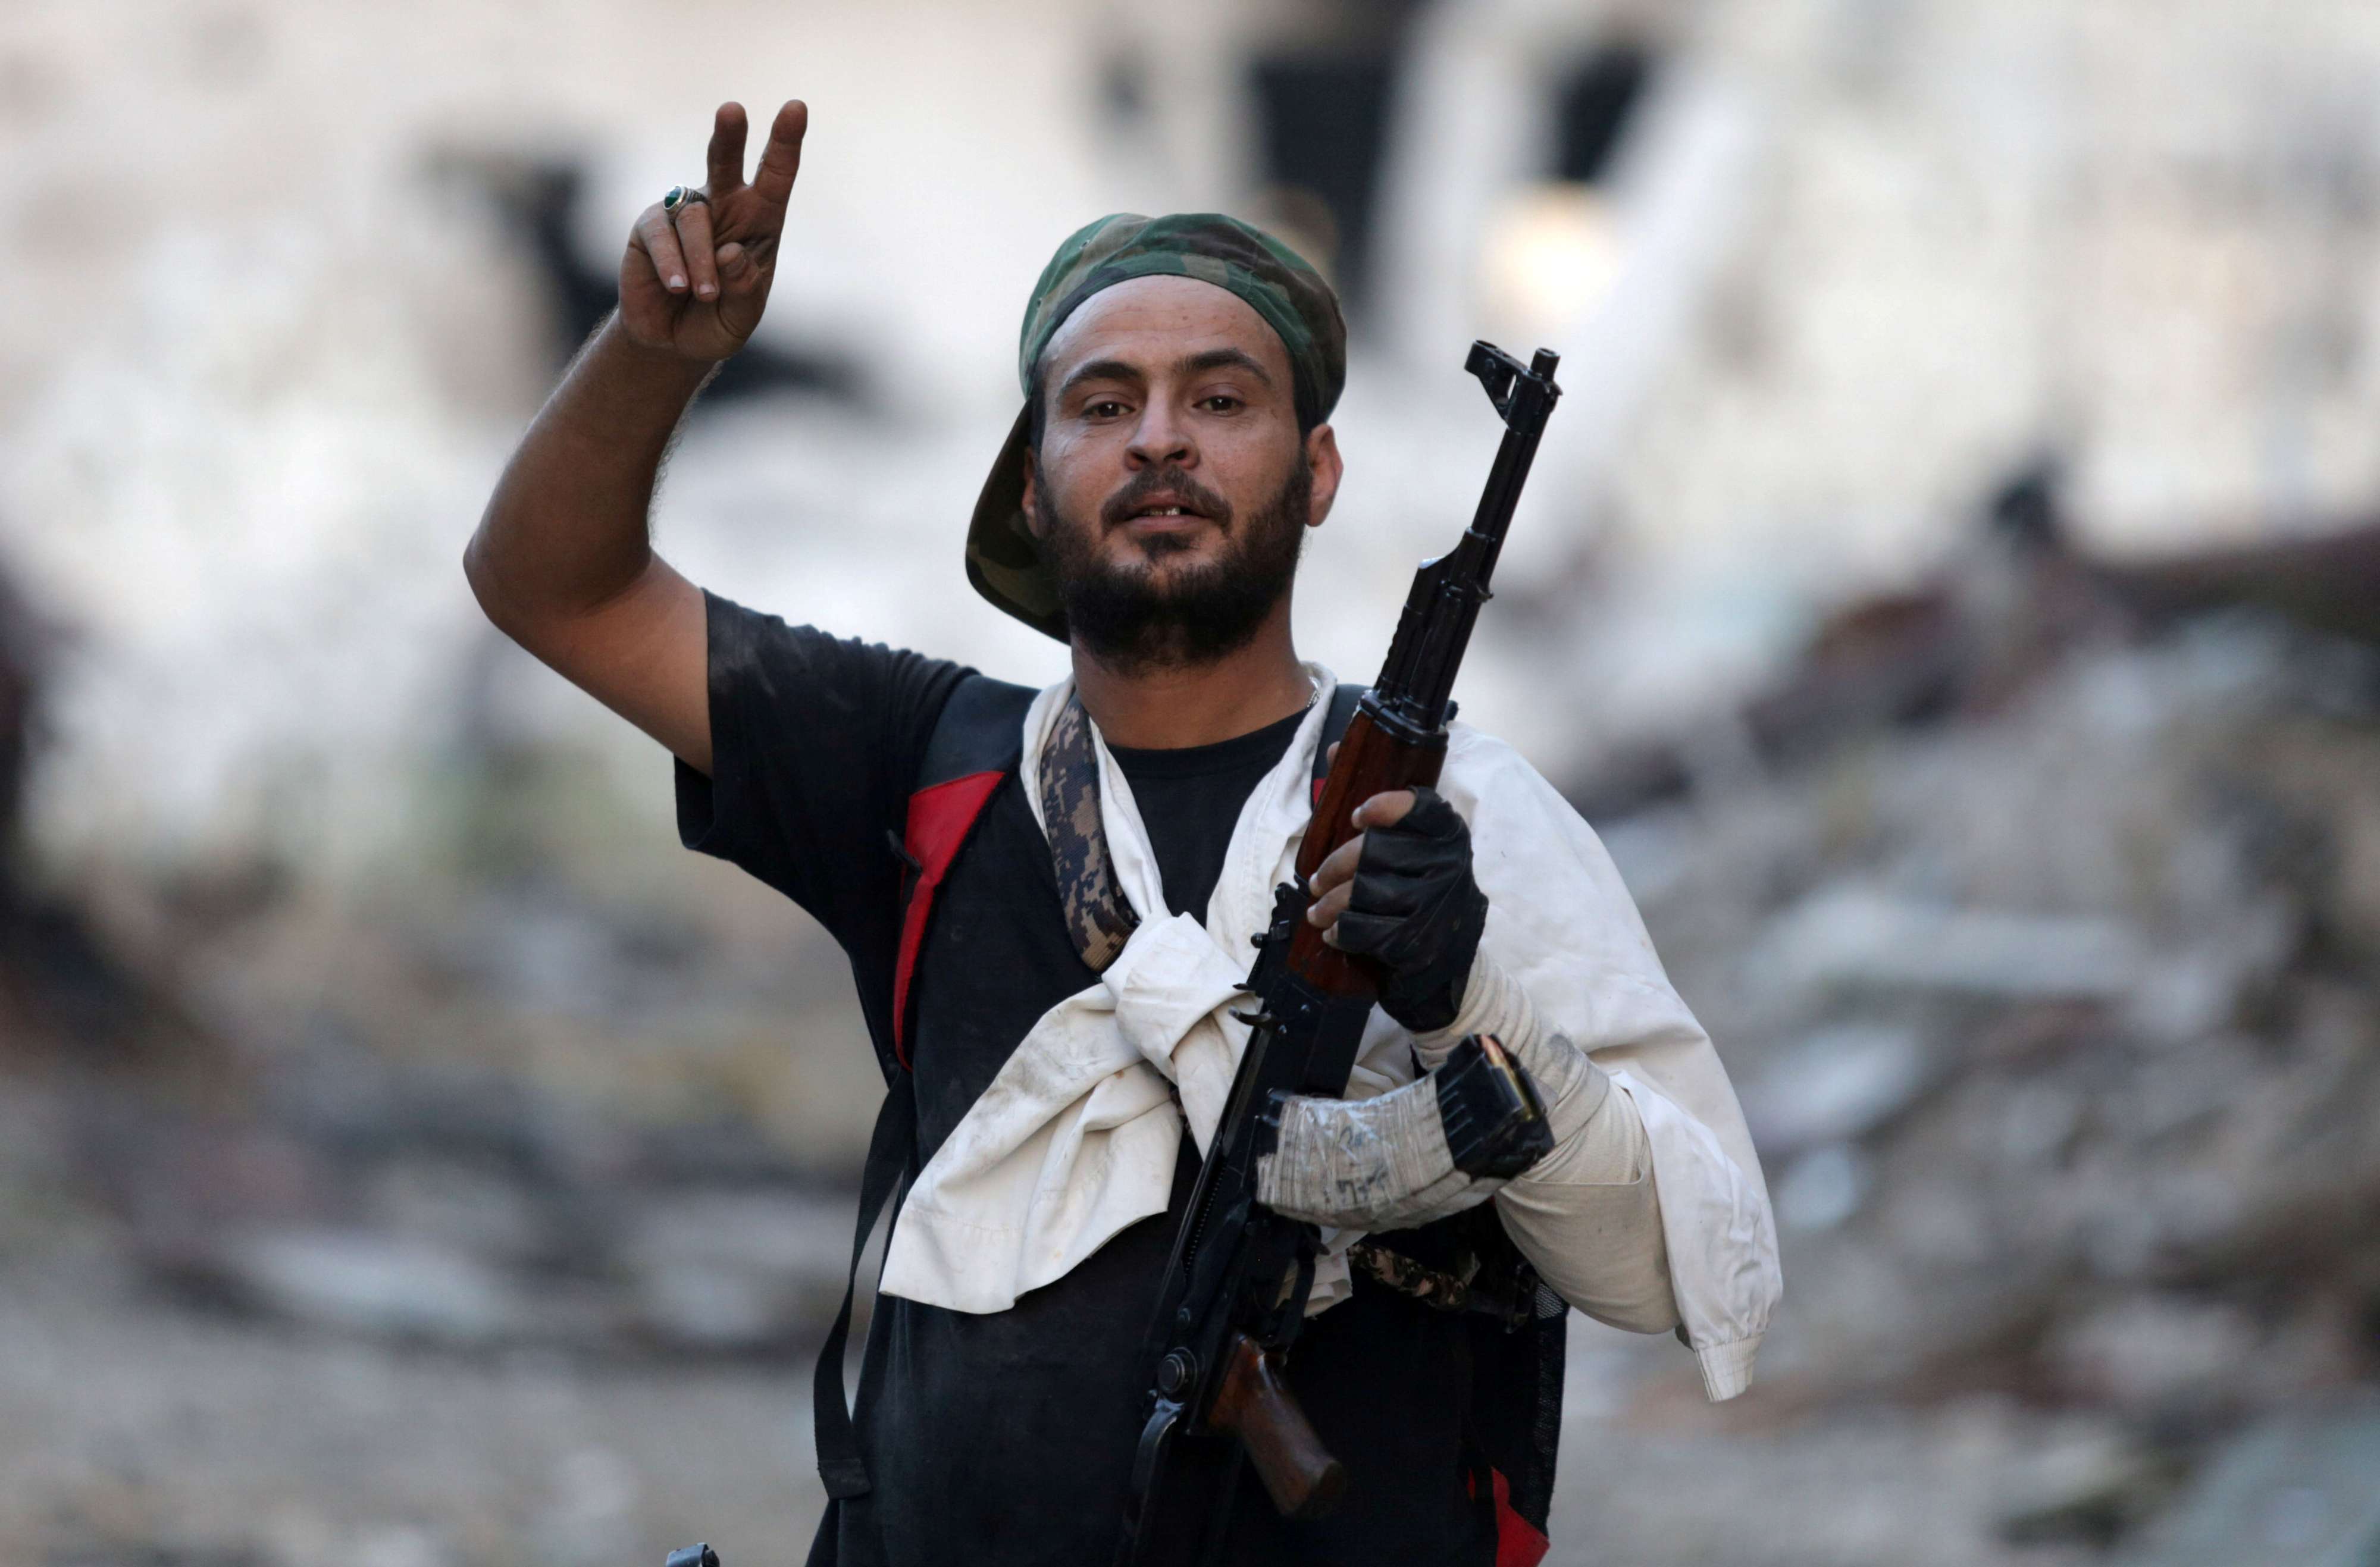 الميليشيات في ليبيا تعمل على عرقلة أي اتفاق لا يخدم أهدافها